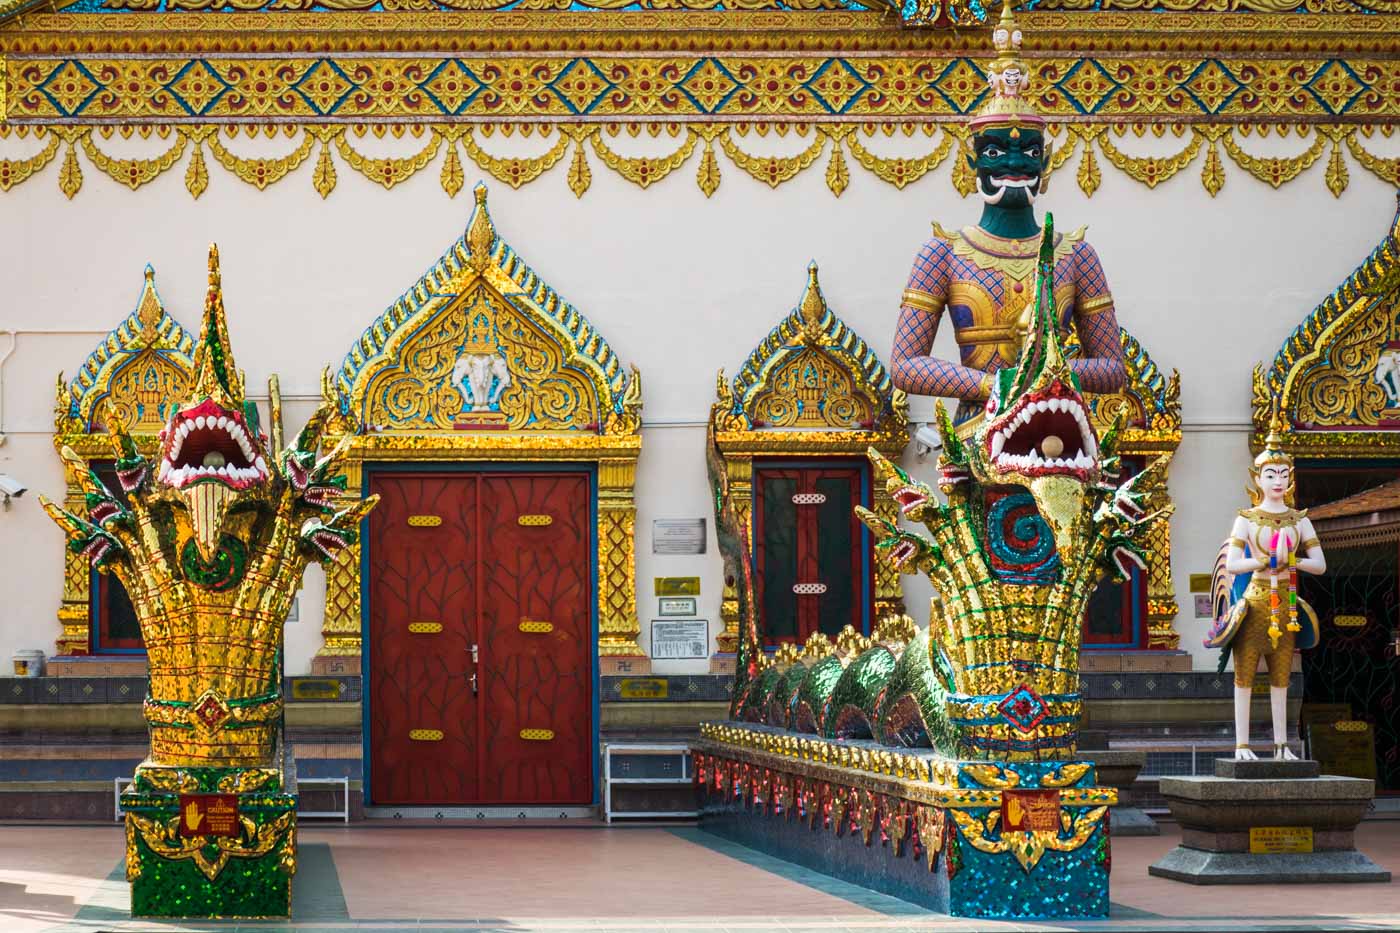 A entrada de um templo Budista com arte detalhada e decorada em dourada e um dragão na porta